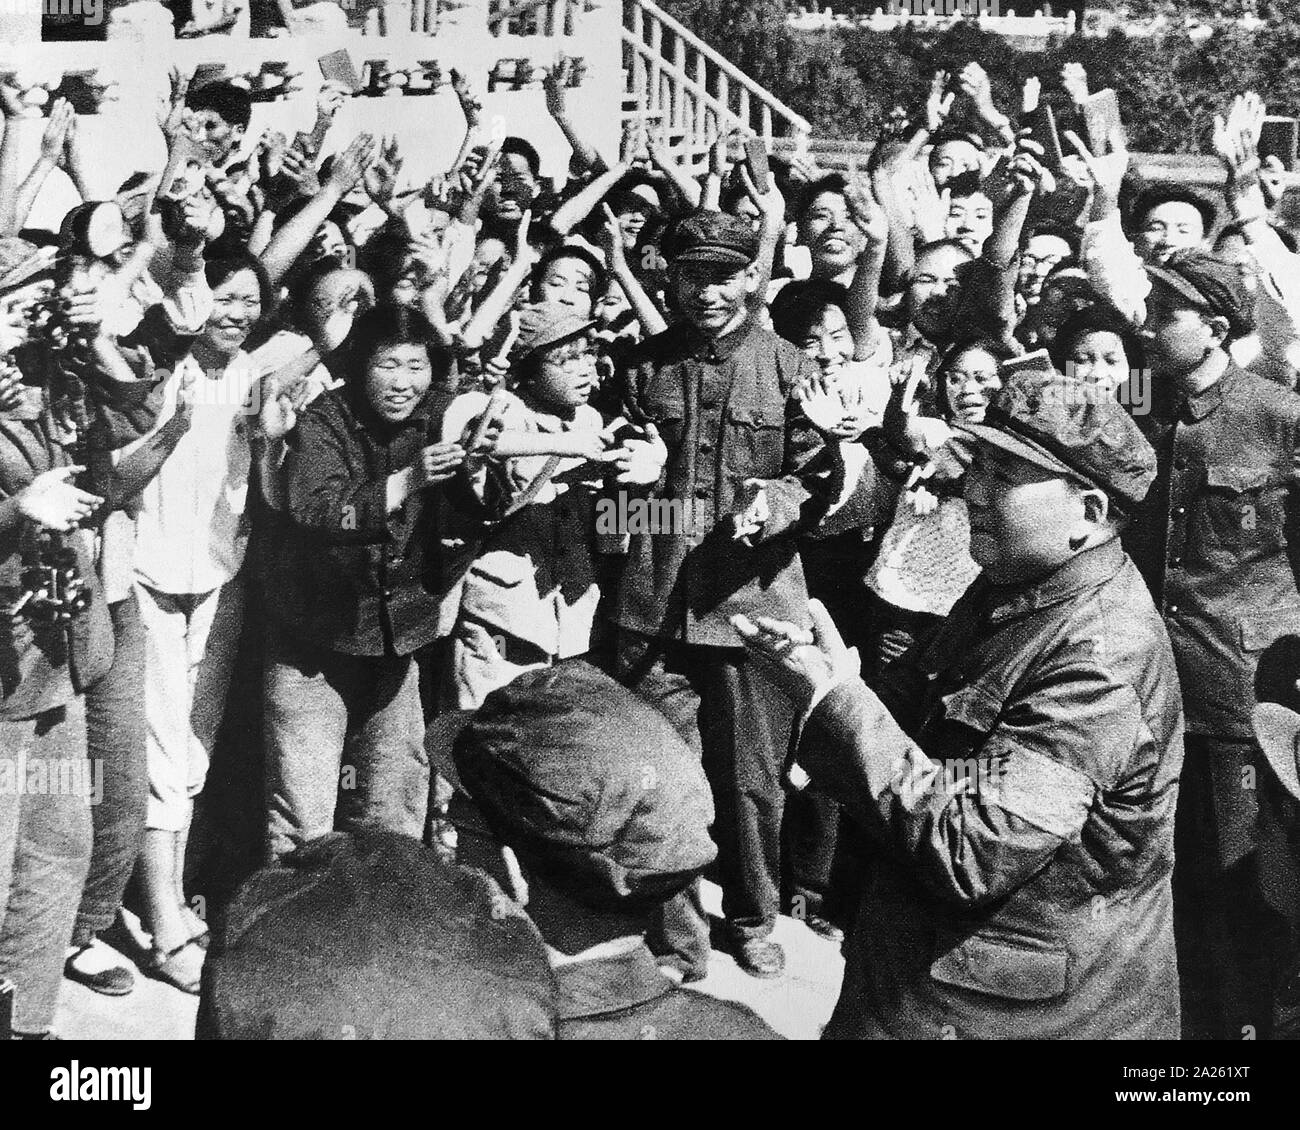 Le président Mao avec des Gardes rouges pendant la Révolution culturelle. 1966. Mao Zedong (1893 - 9 septembre 1976), était un révolutionnaire communiste chinois qui est devenu le père fondateur de la